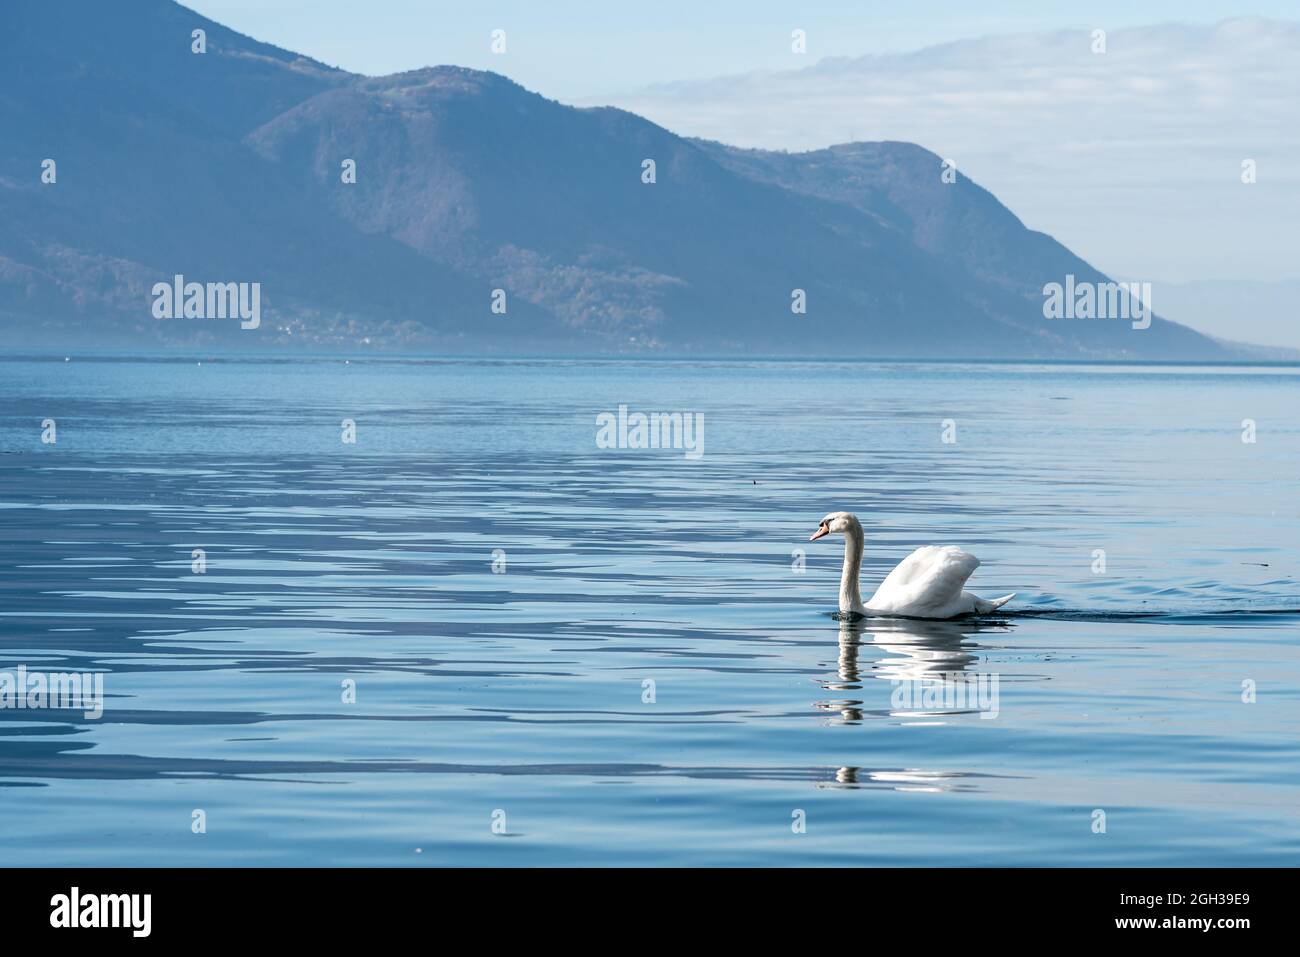 Schwan schwebt an einem sonnigen Tag auf der Oberfläche eines alpinen Sees mit ruhigem blauem Wasser Stockfoto